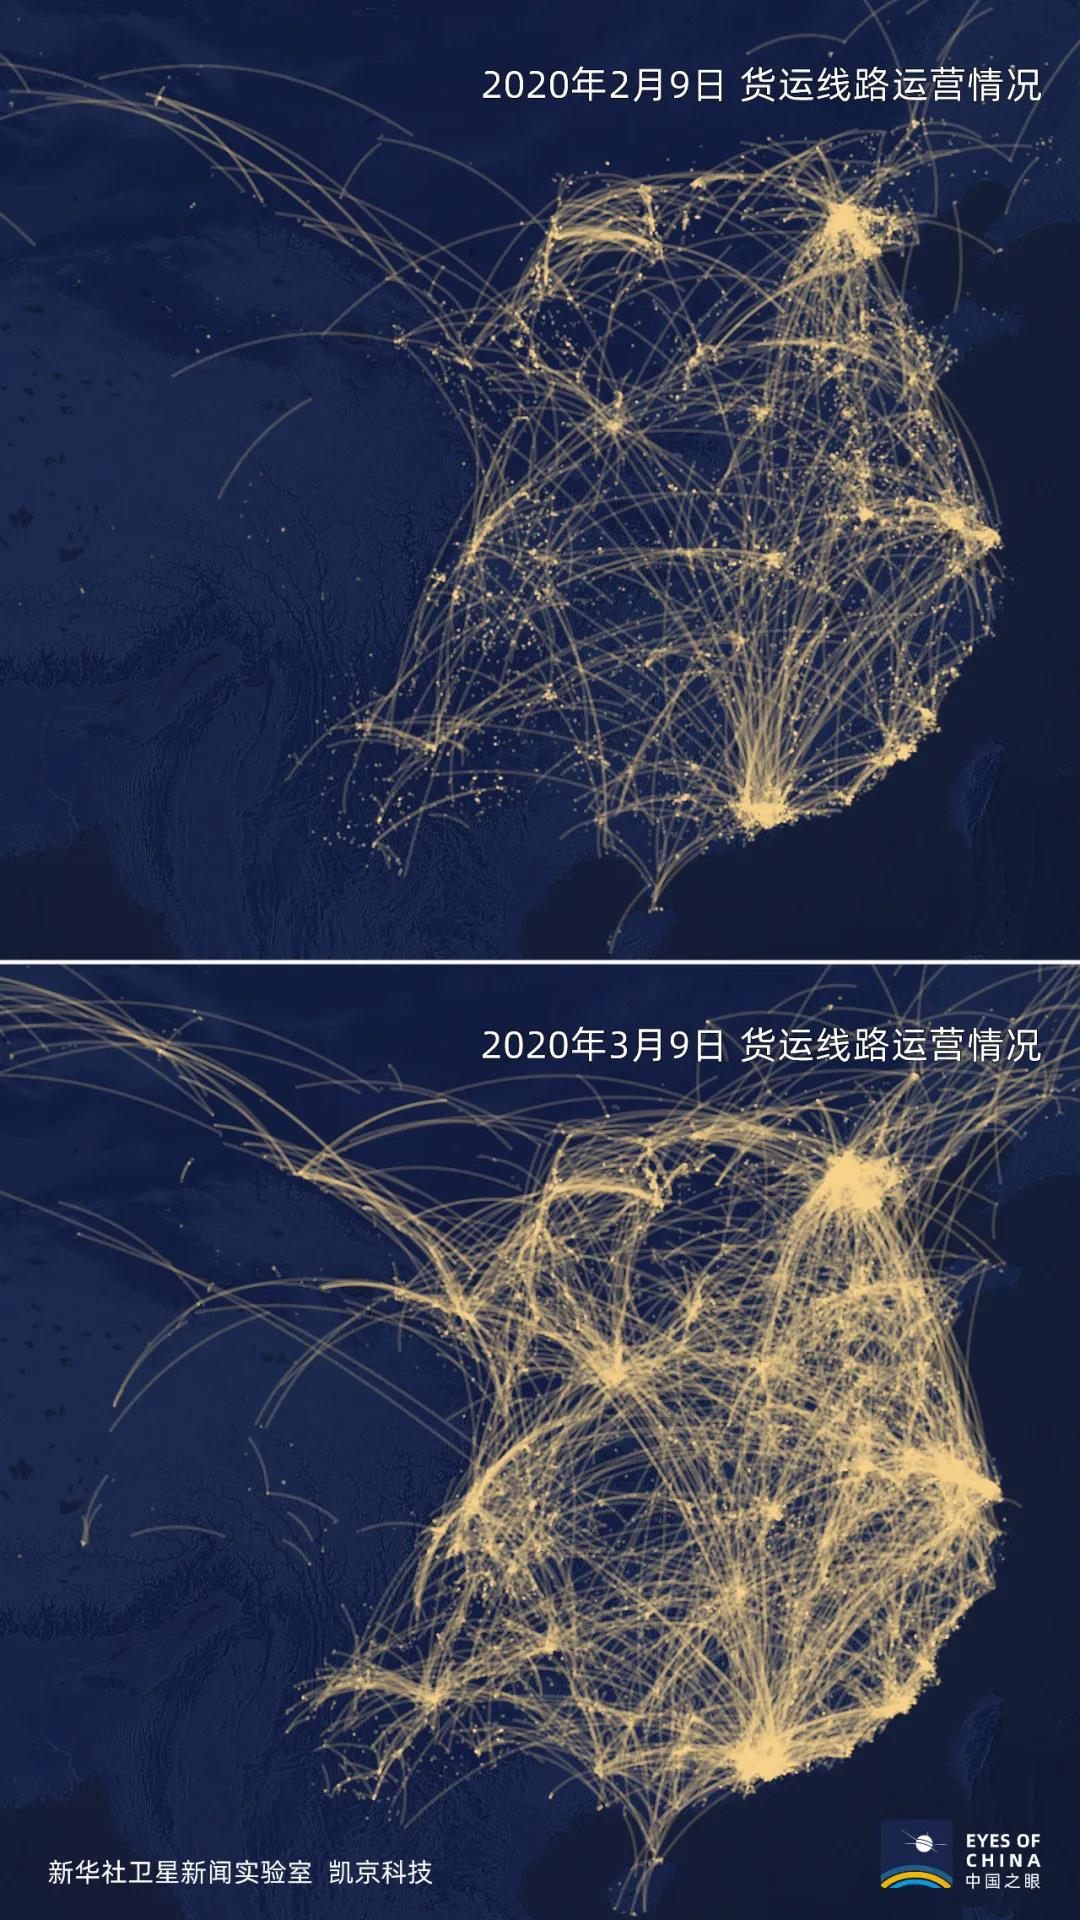 中国货车已全面开跑！2万家物流公司货车卫星数据对比